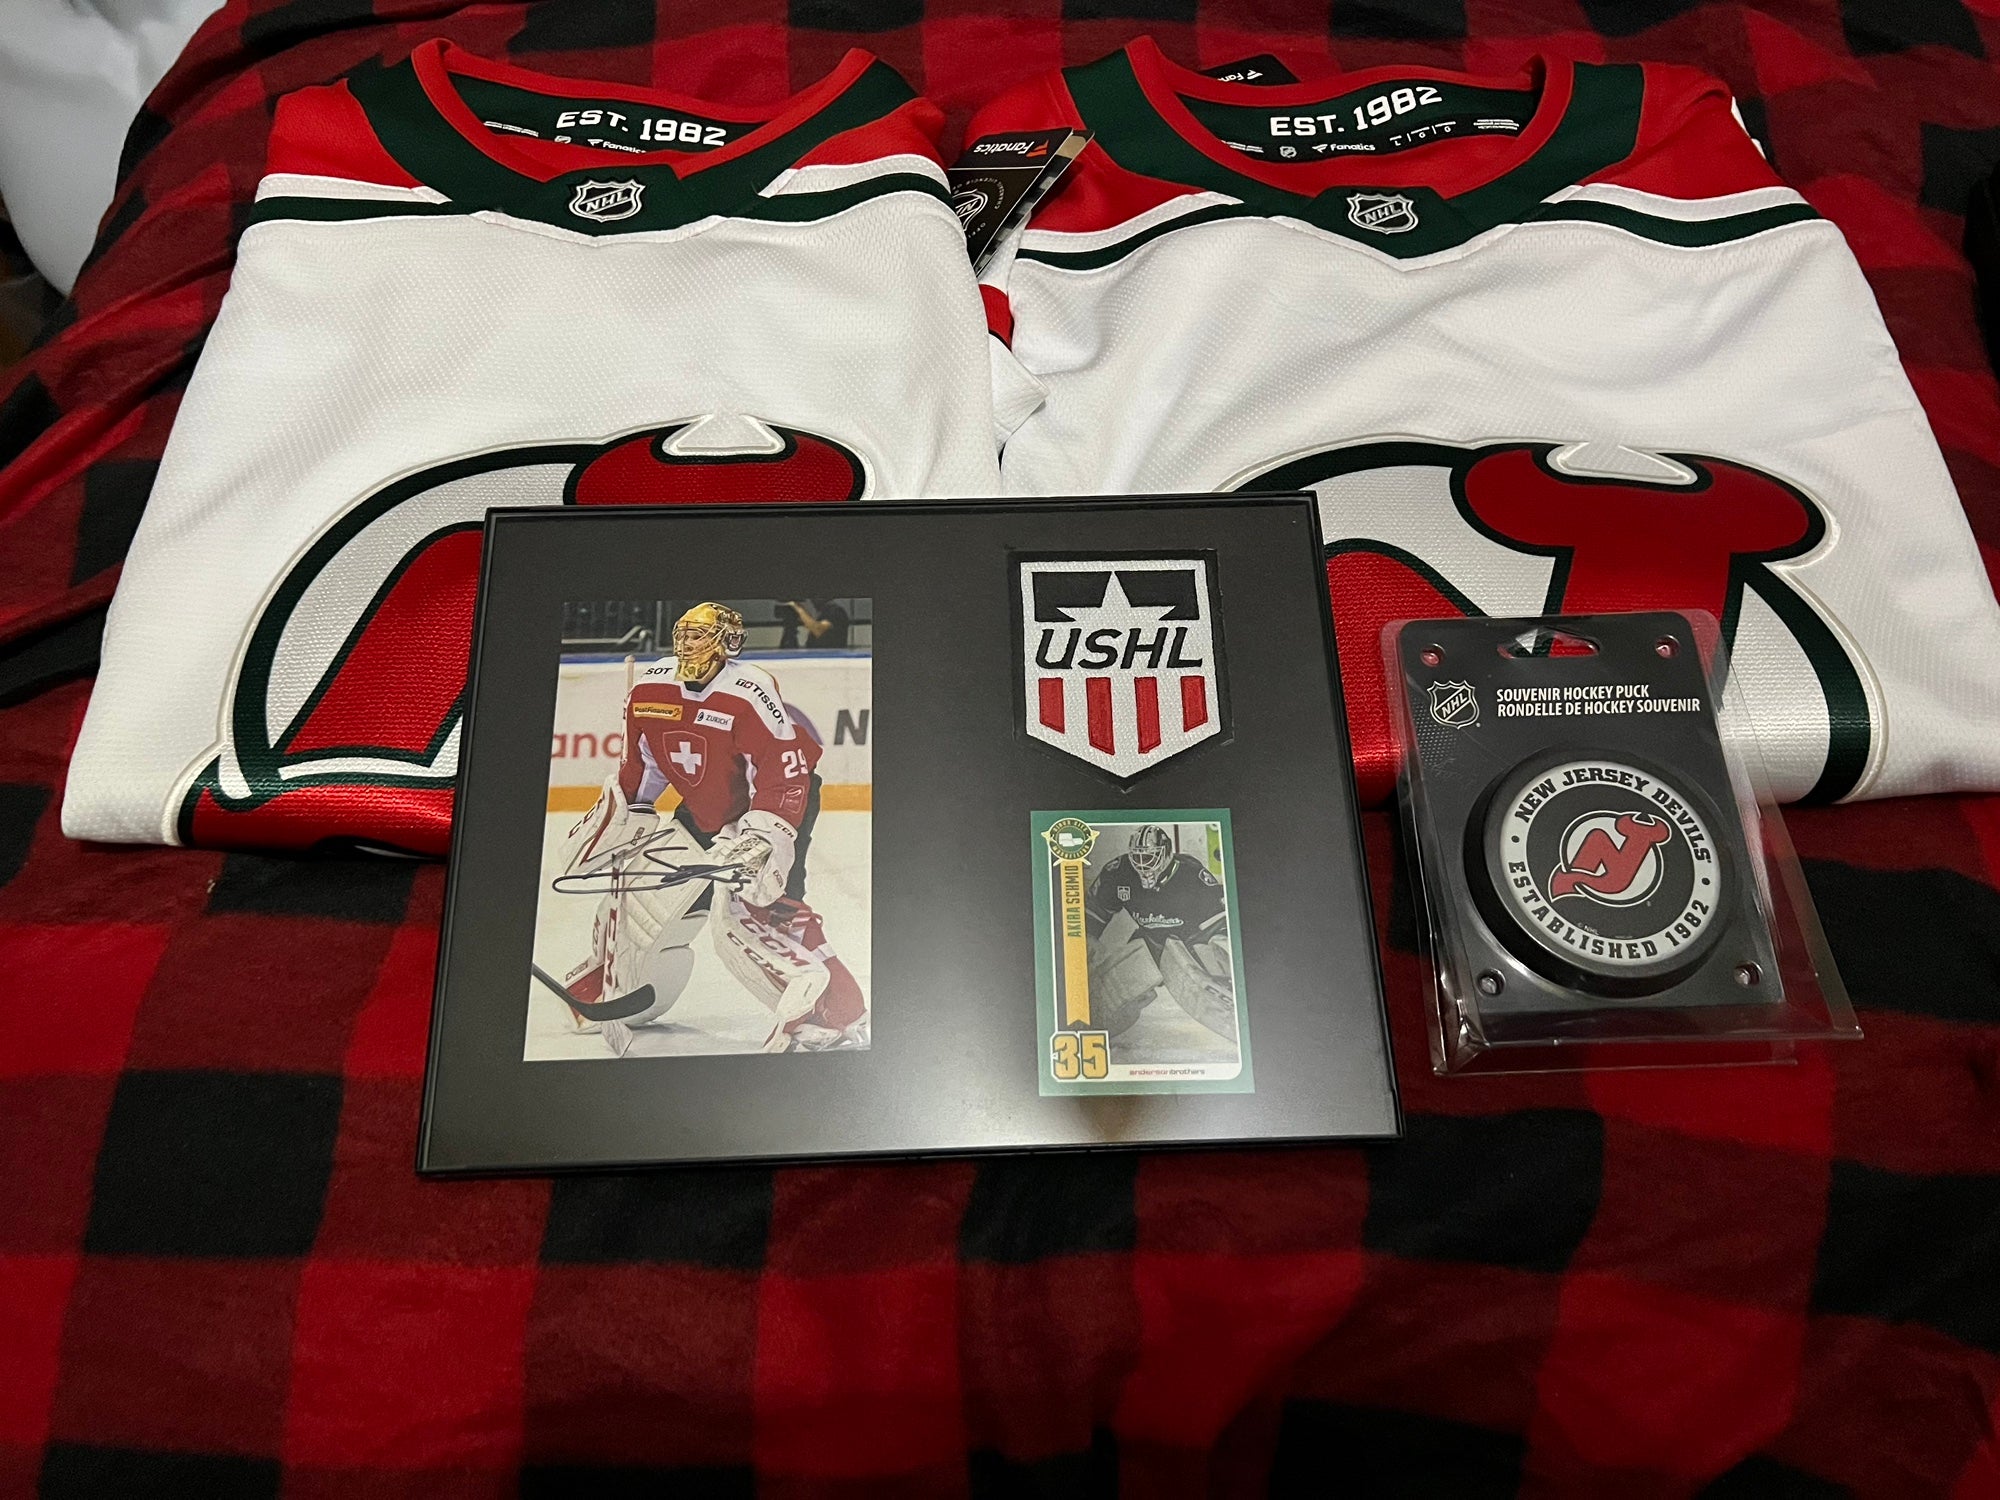 New Jersey Devils NHL Fan Jerseys for sale